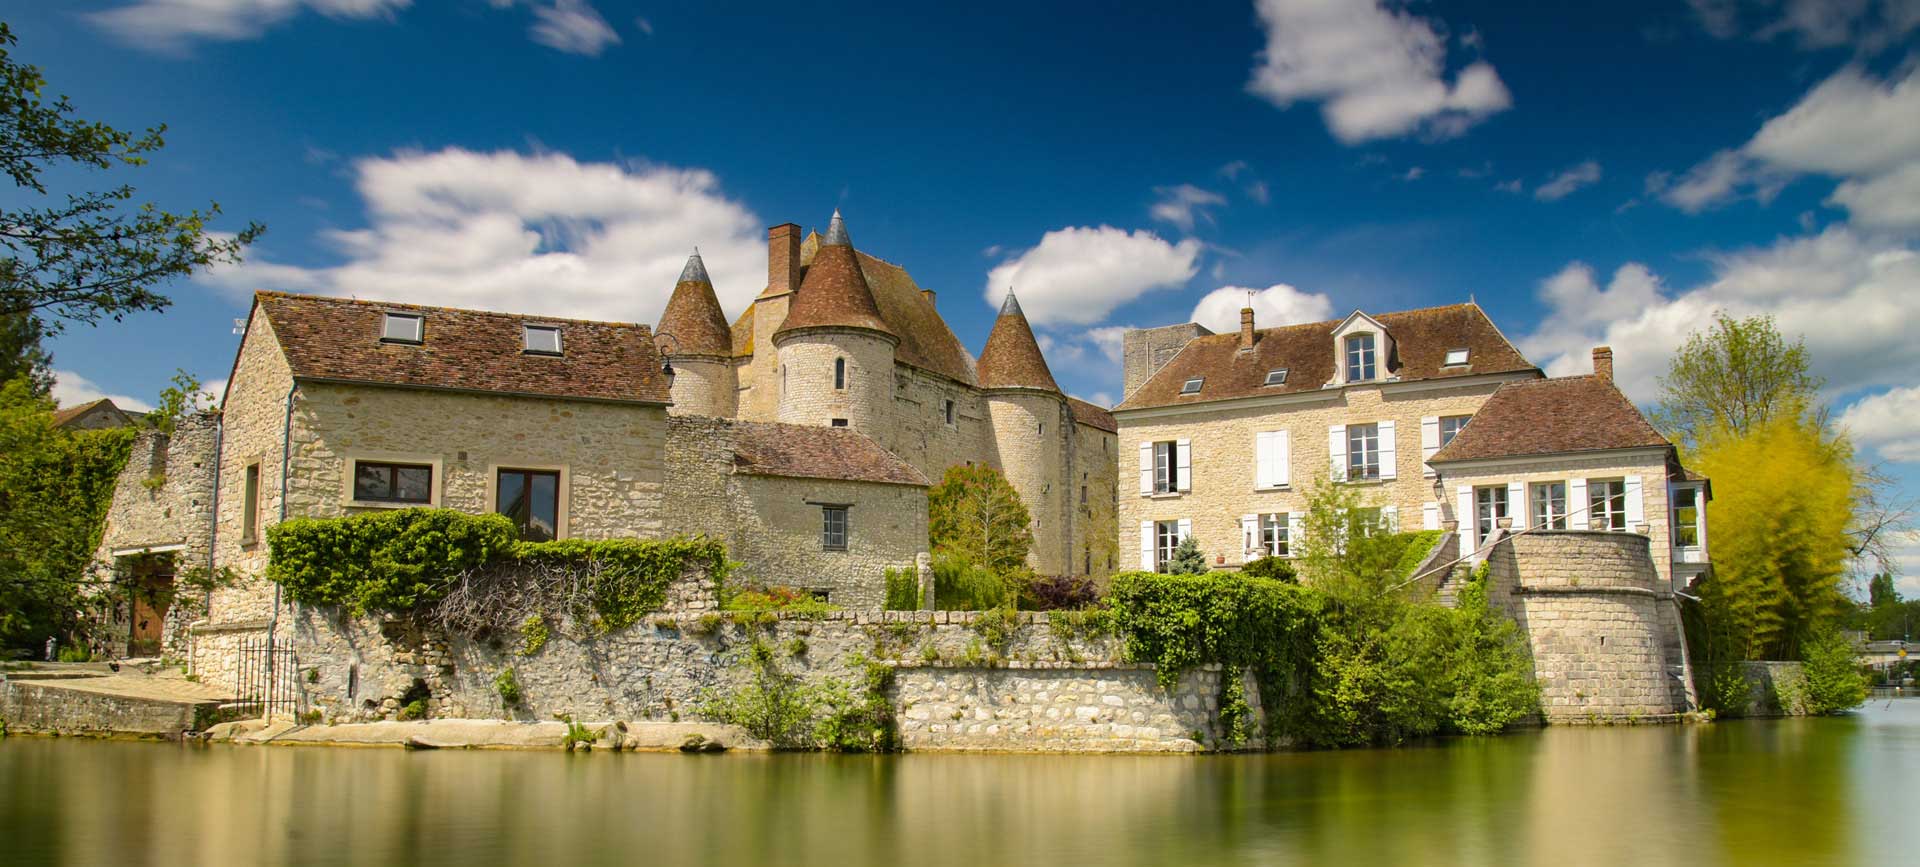 Château de Nemours sud-est de la région parisenne dans le département de Seine-et-Marne